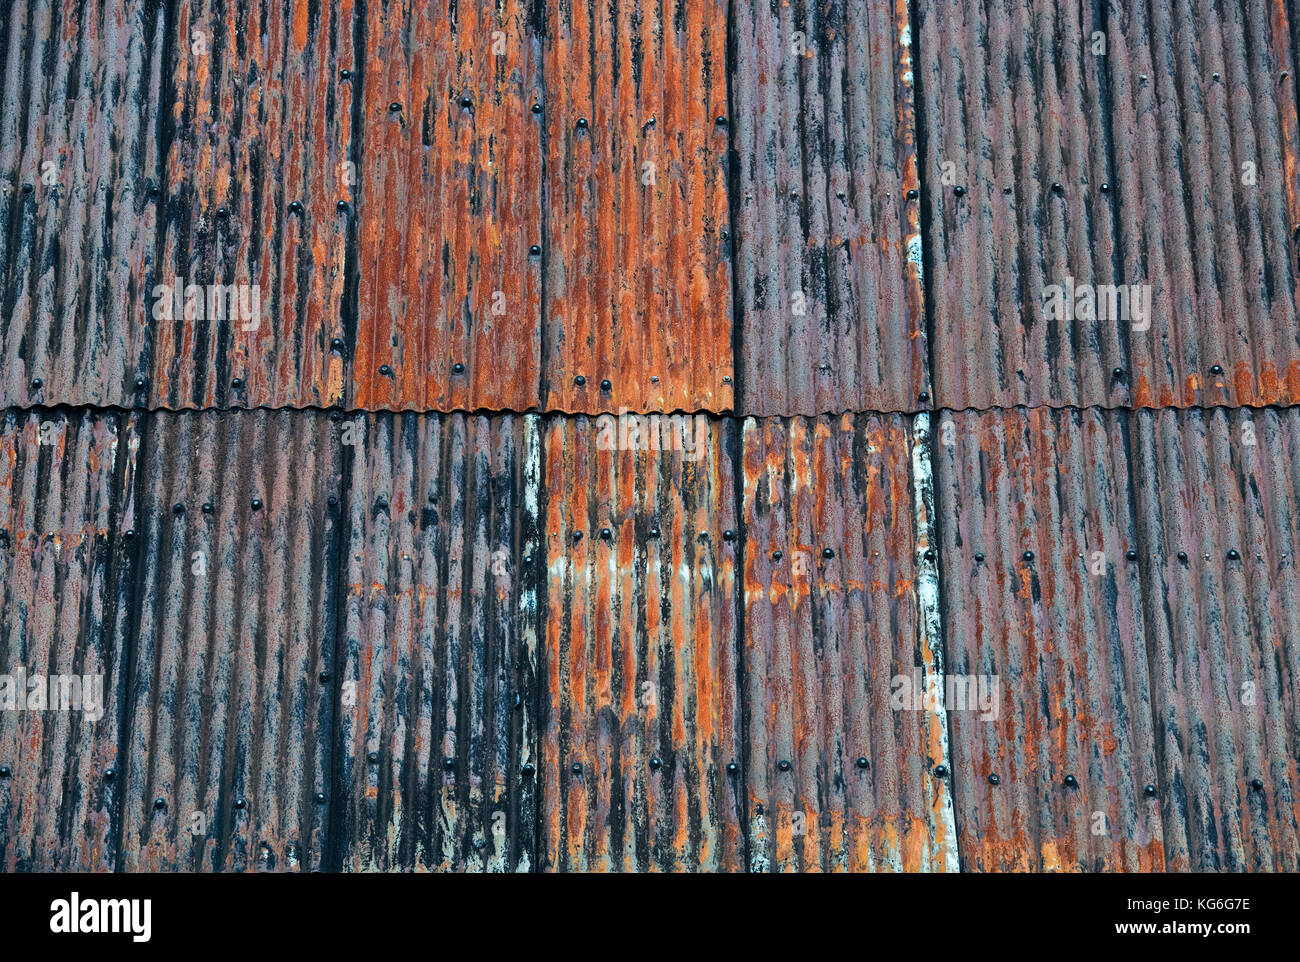 Alte verrostete corragated Tin Roof Panels auf einem Garagendach. Dumfries und Galloway, Scottish Borders, Schottland Stockfoto